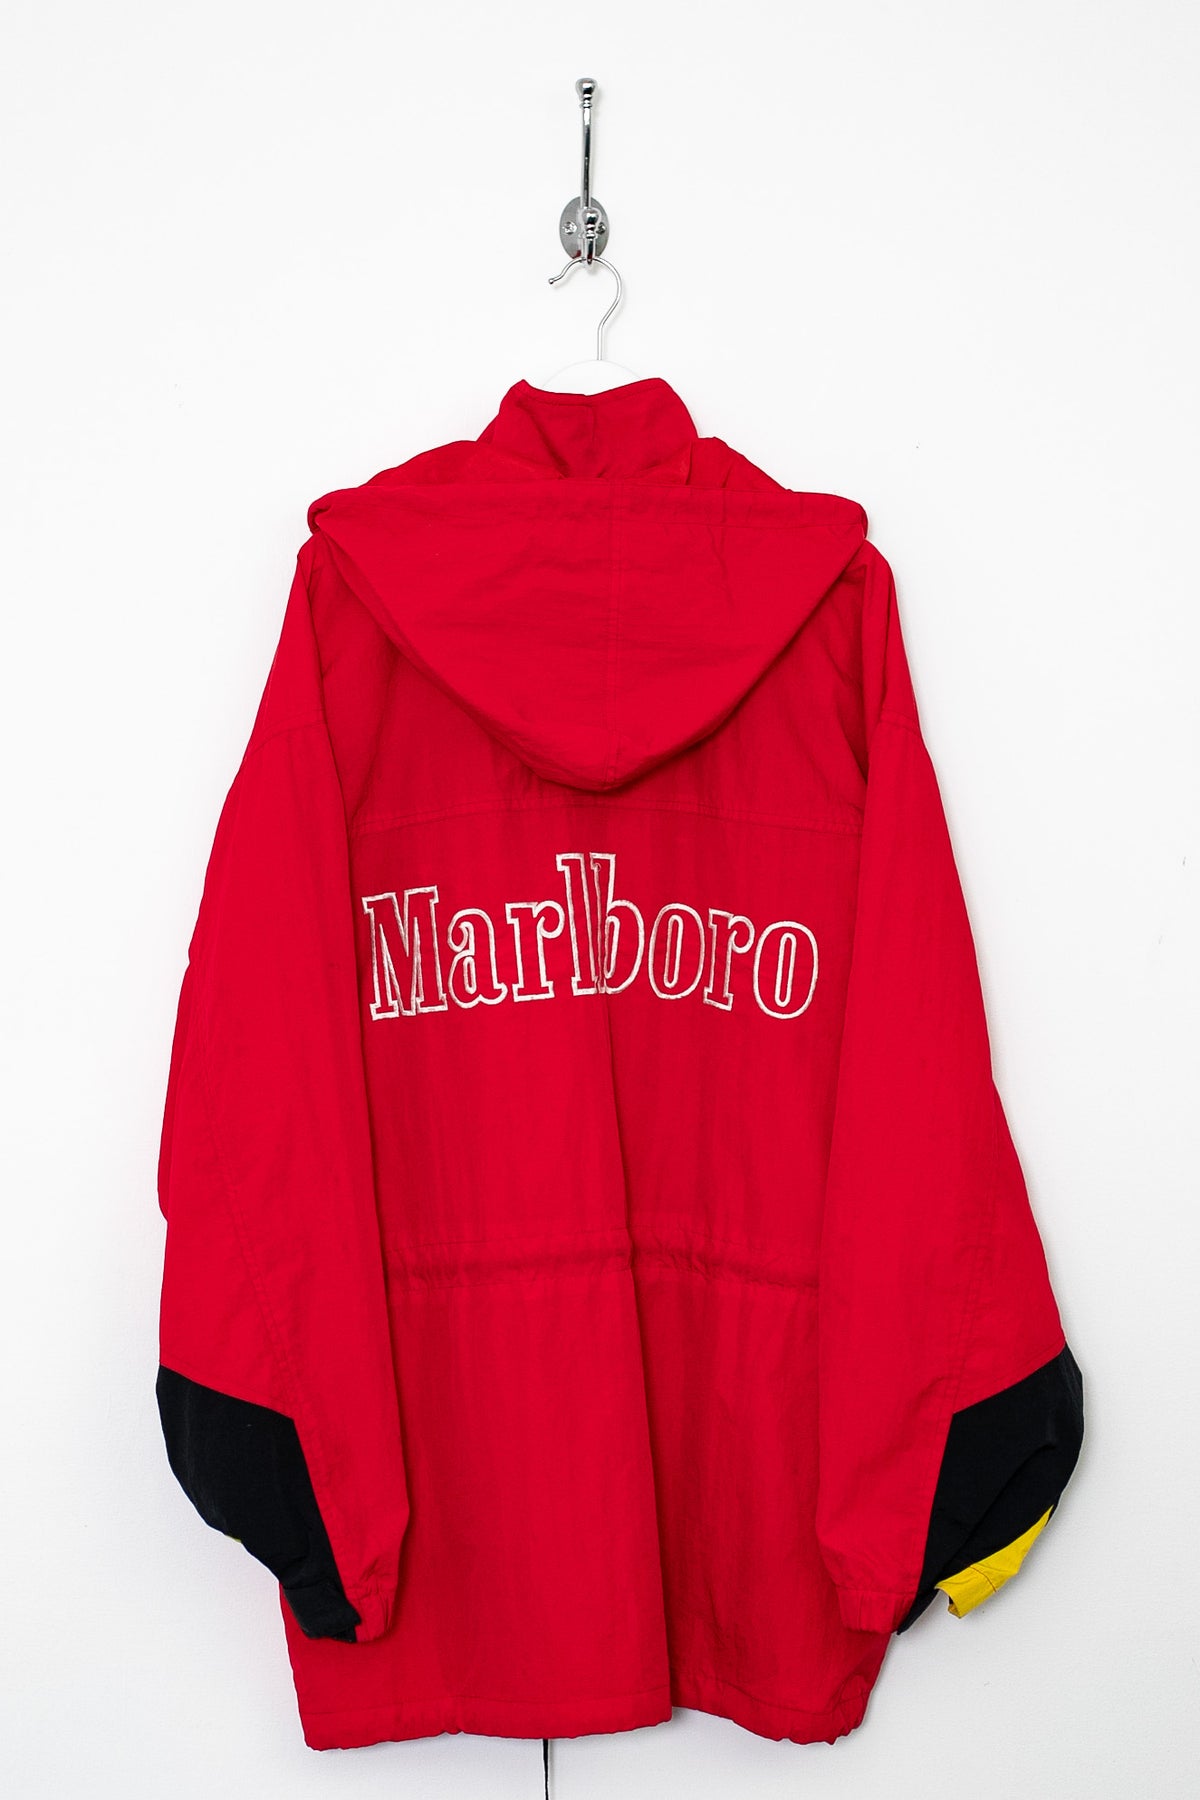 90s Marlboro Jacket (L)